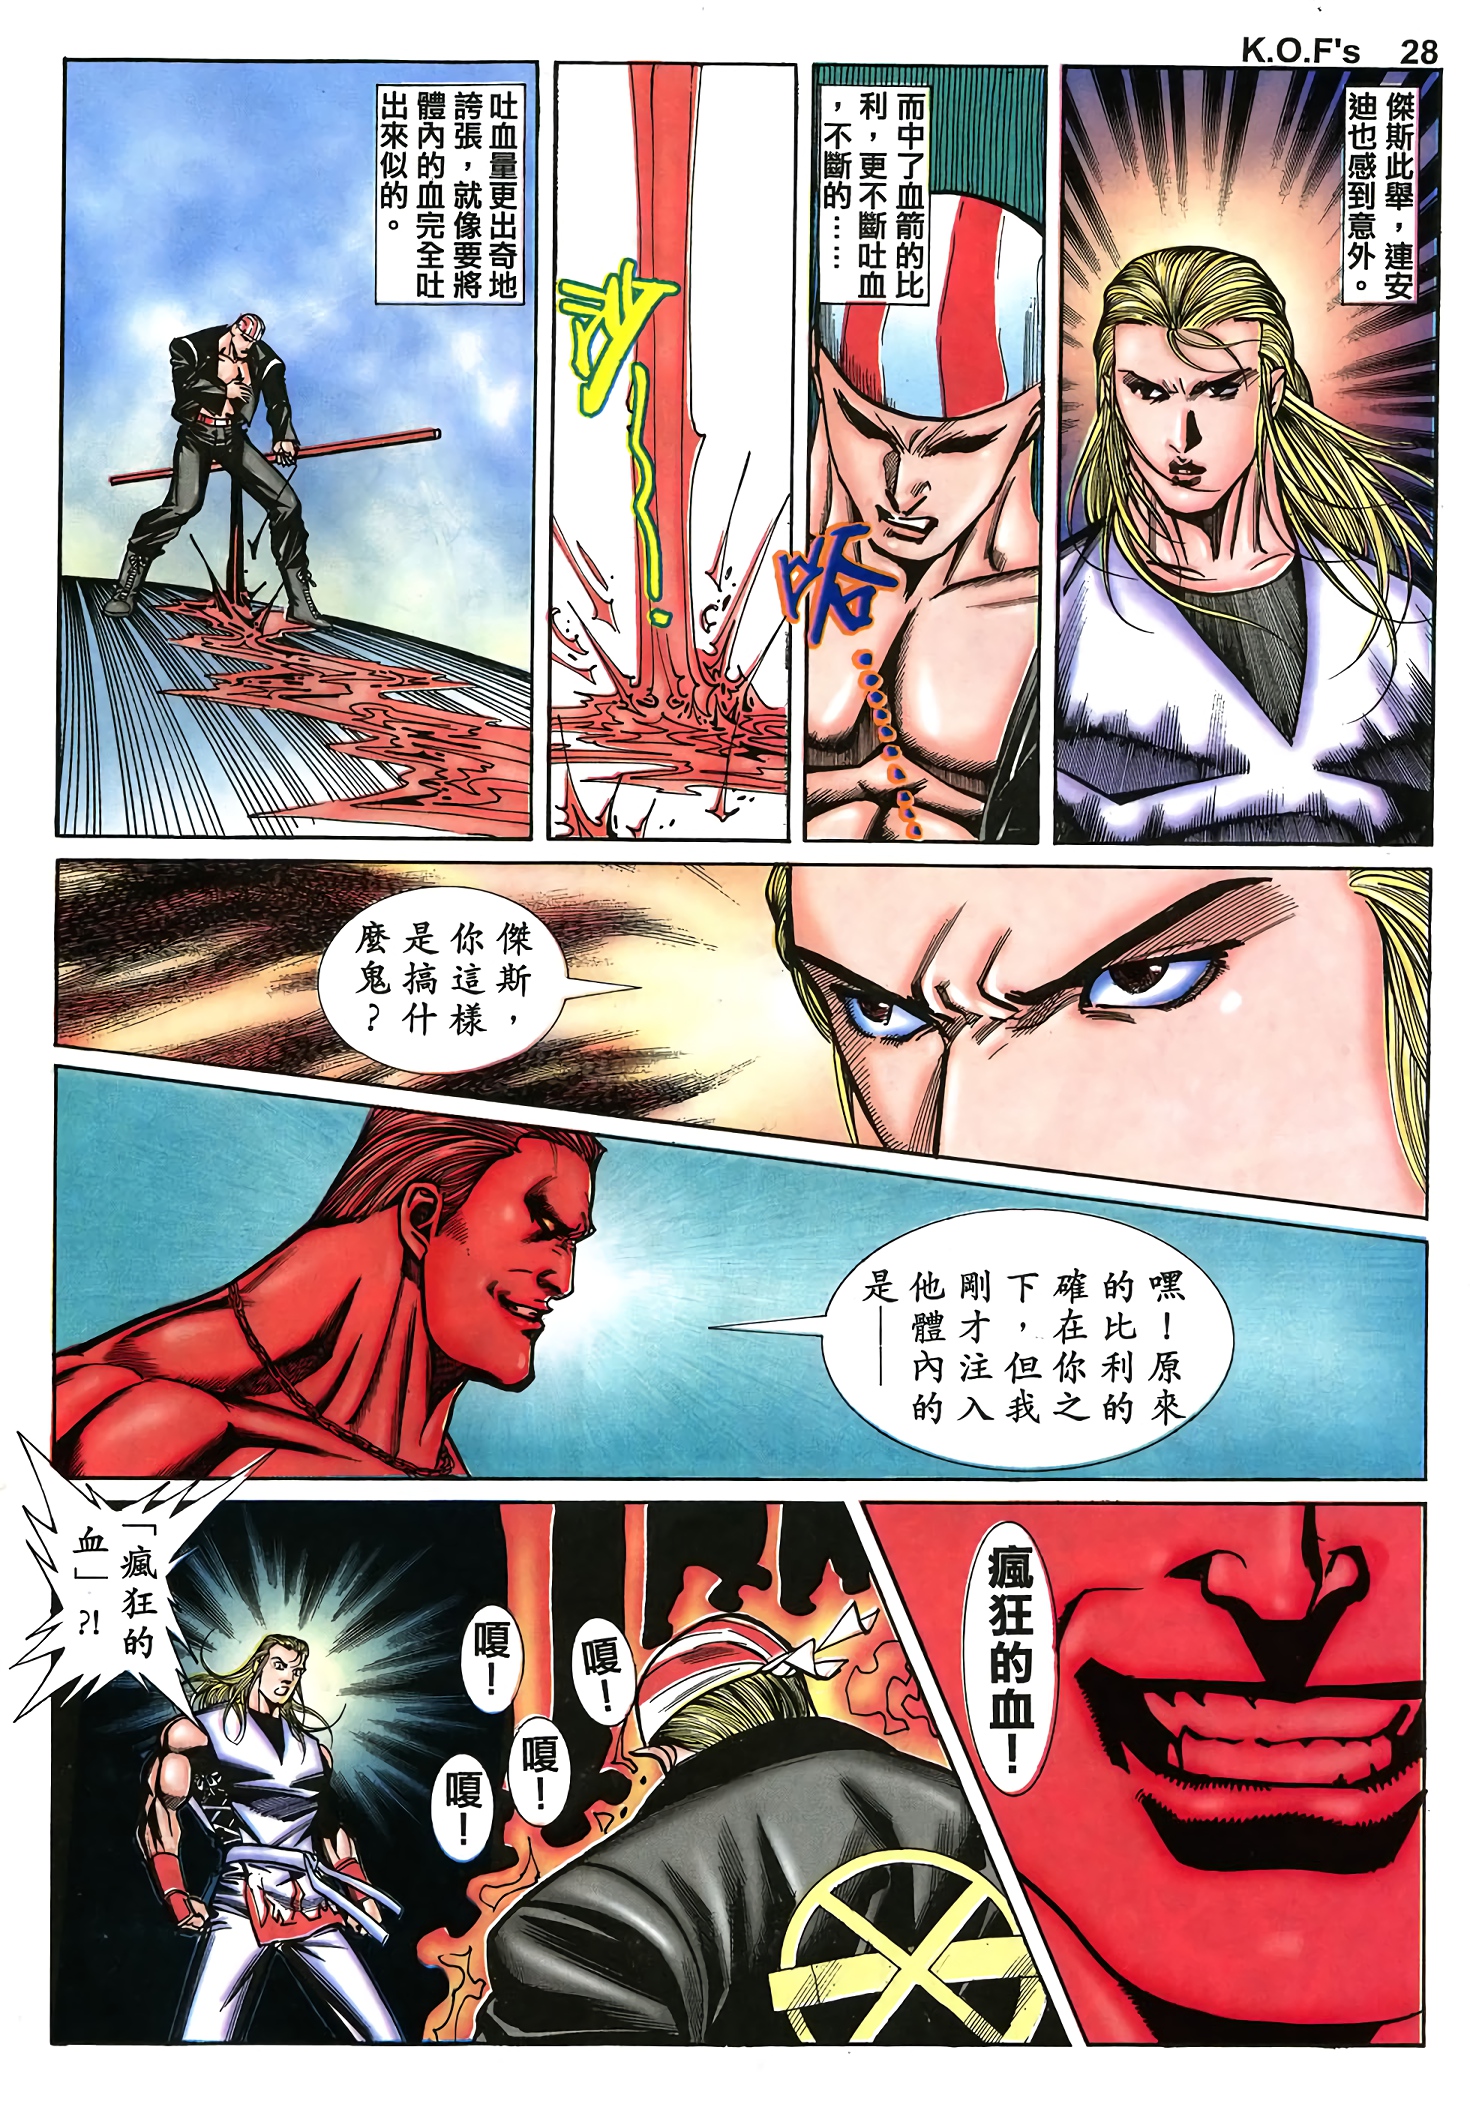 郑健和《拳皇97（彩色）》JPG 电子版漫画下载百度云网盘下载插图1